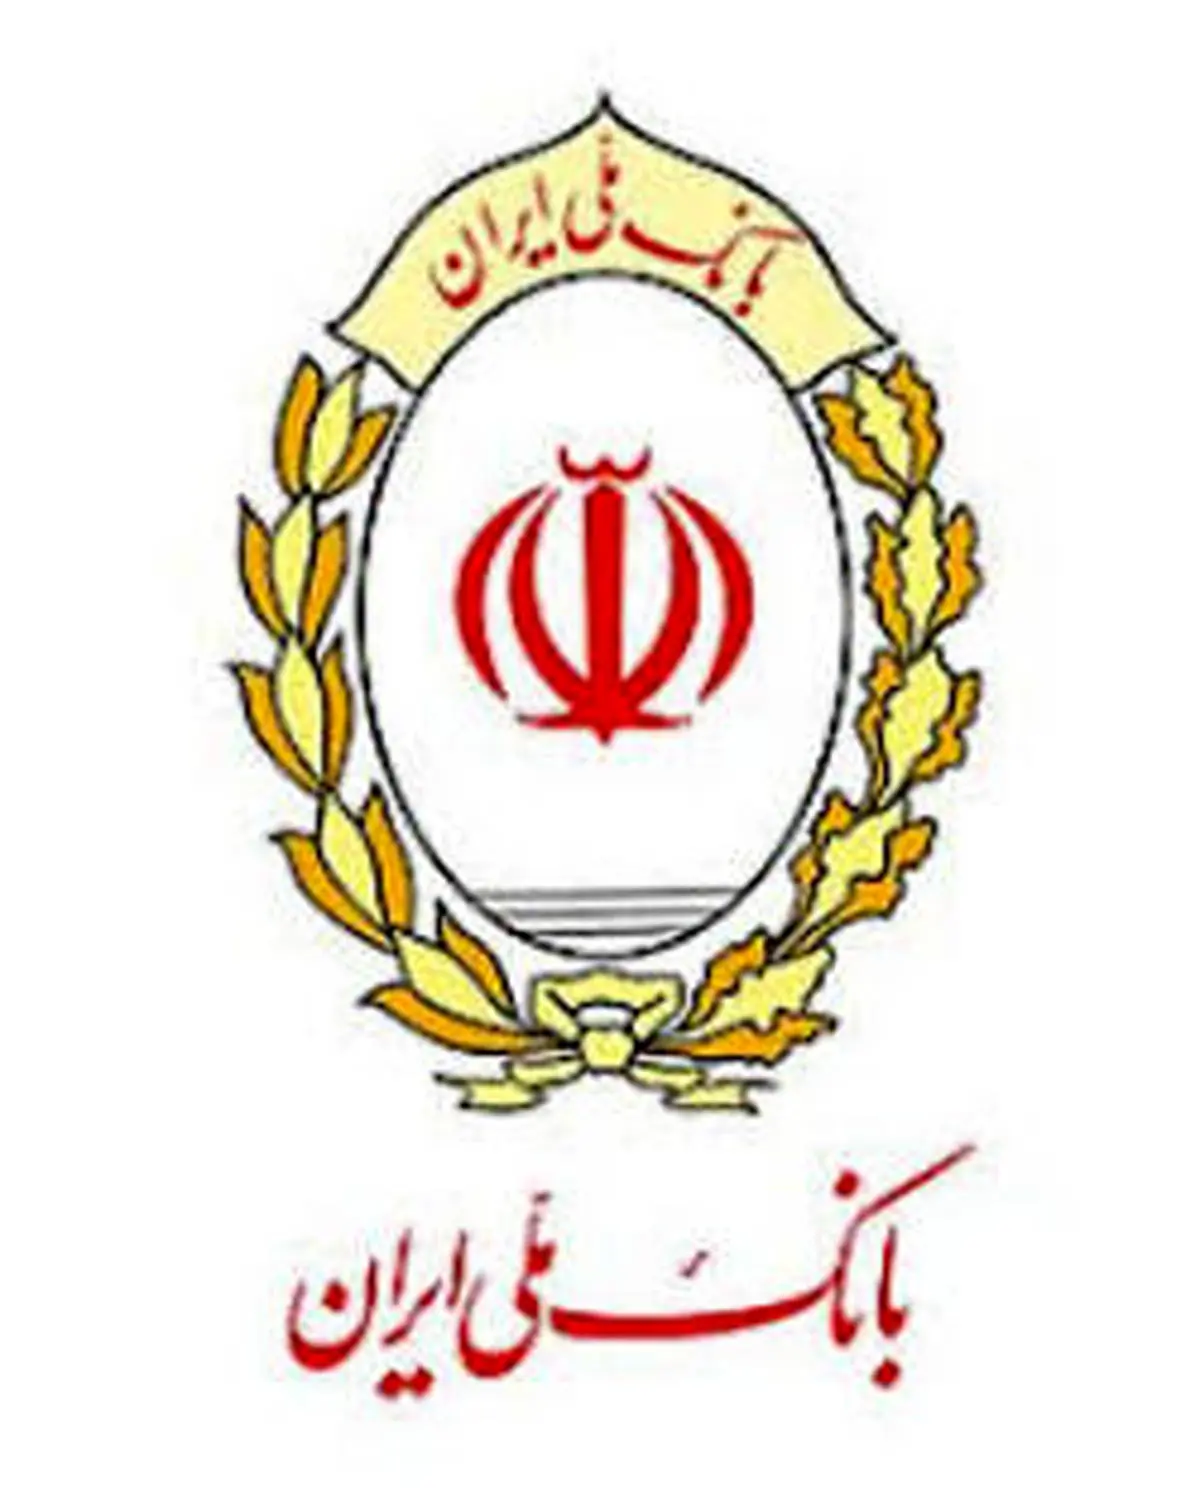 ویدئو بام، خدمت جدید و ارزنده بانک ملی ایران برای کاربران سامانه بام